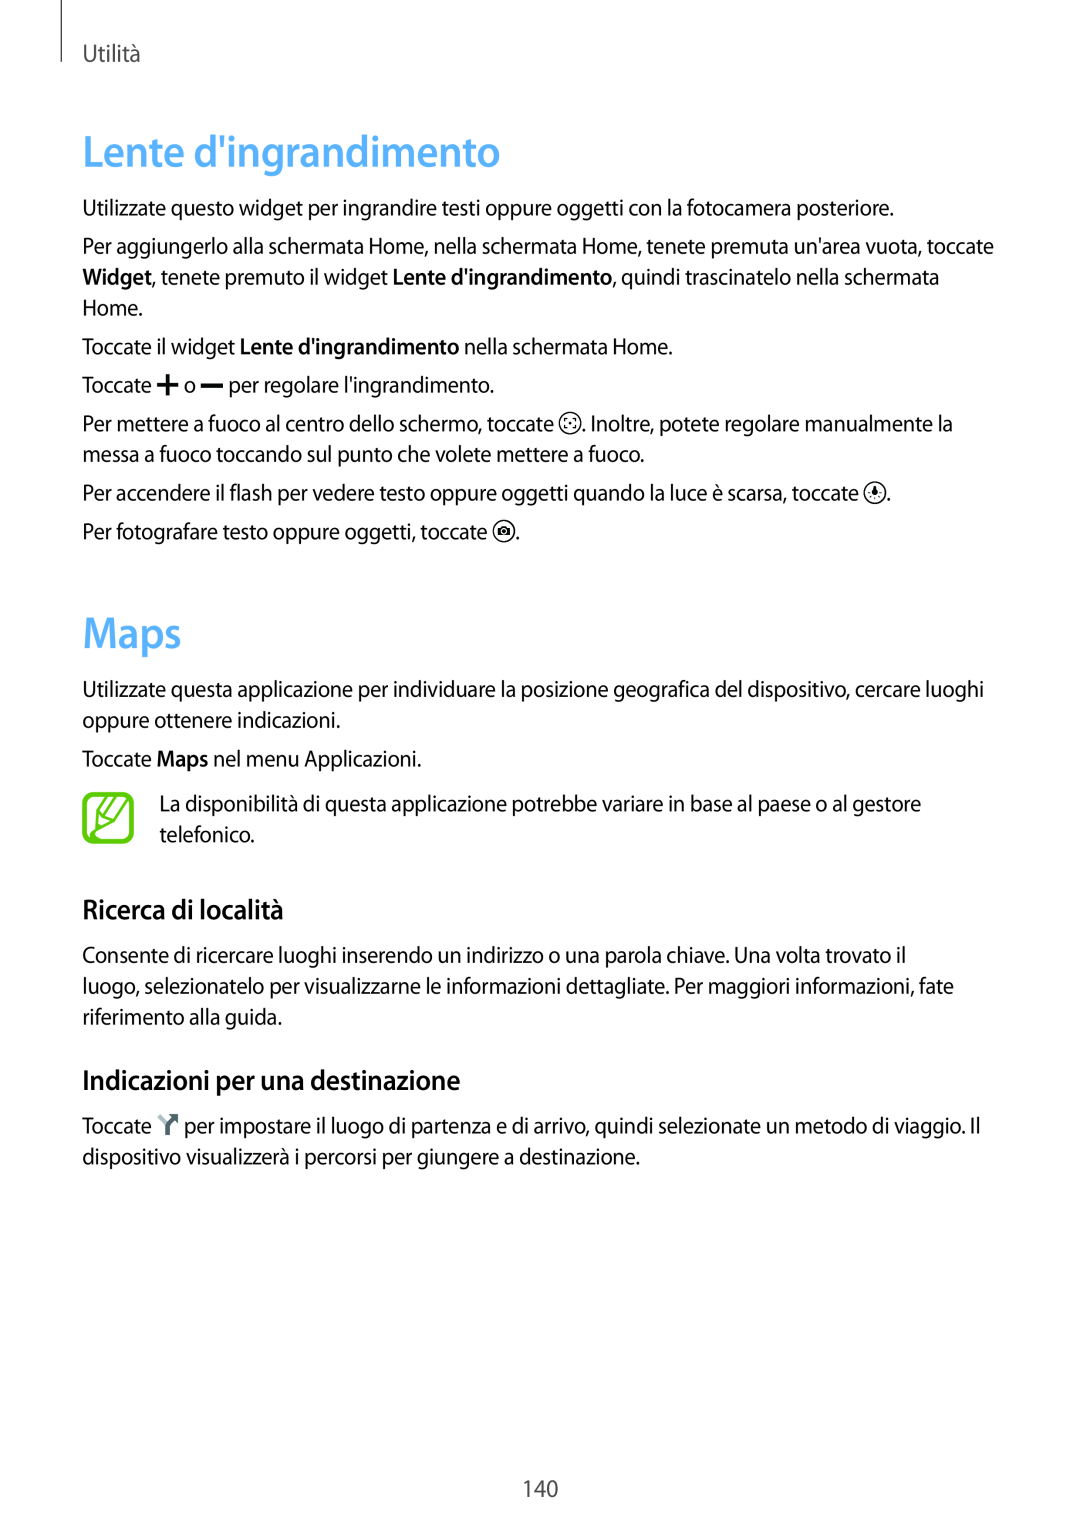 Samsung SM-G900FZWAHUI manual Lente dingrandimento, Maps, Ricerca di località, Indicazioni per una destinazione, Utilità 